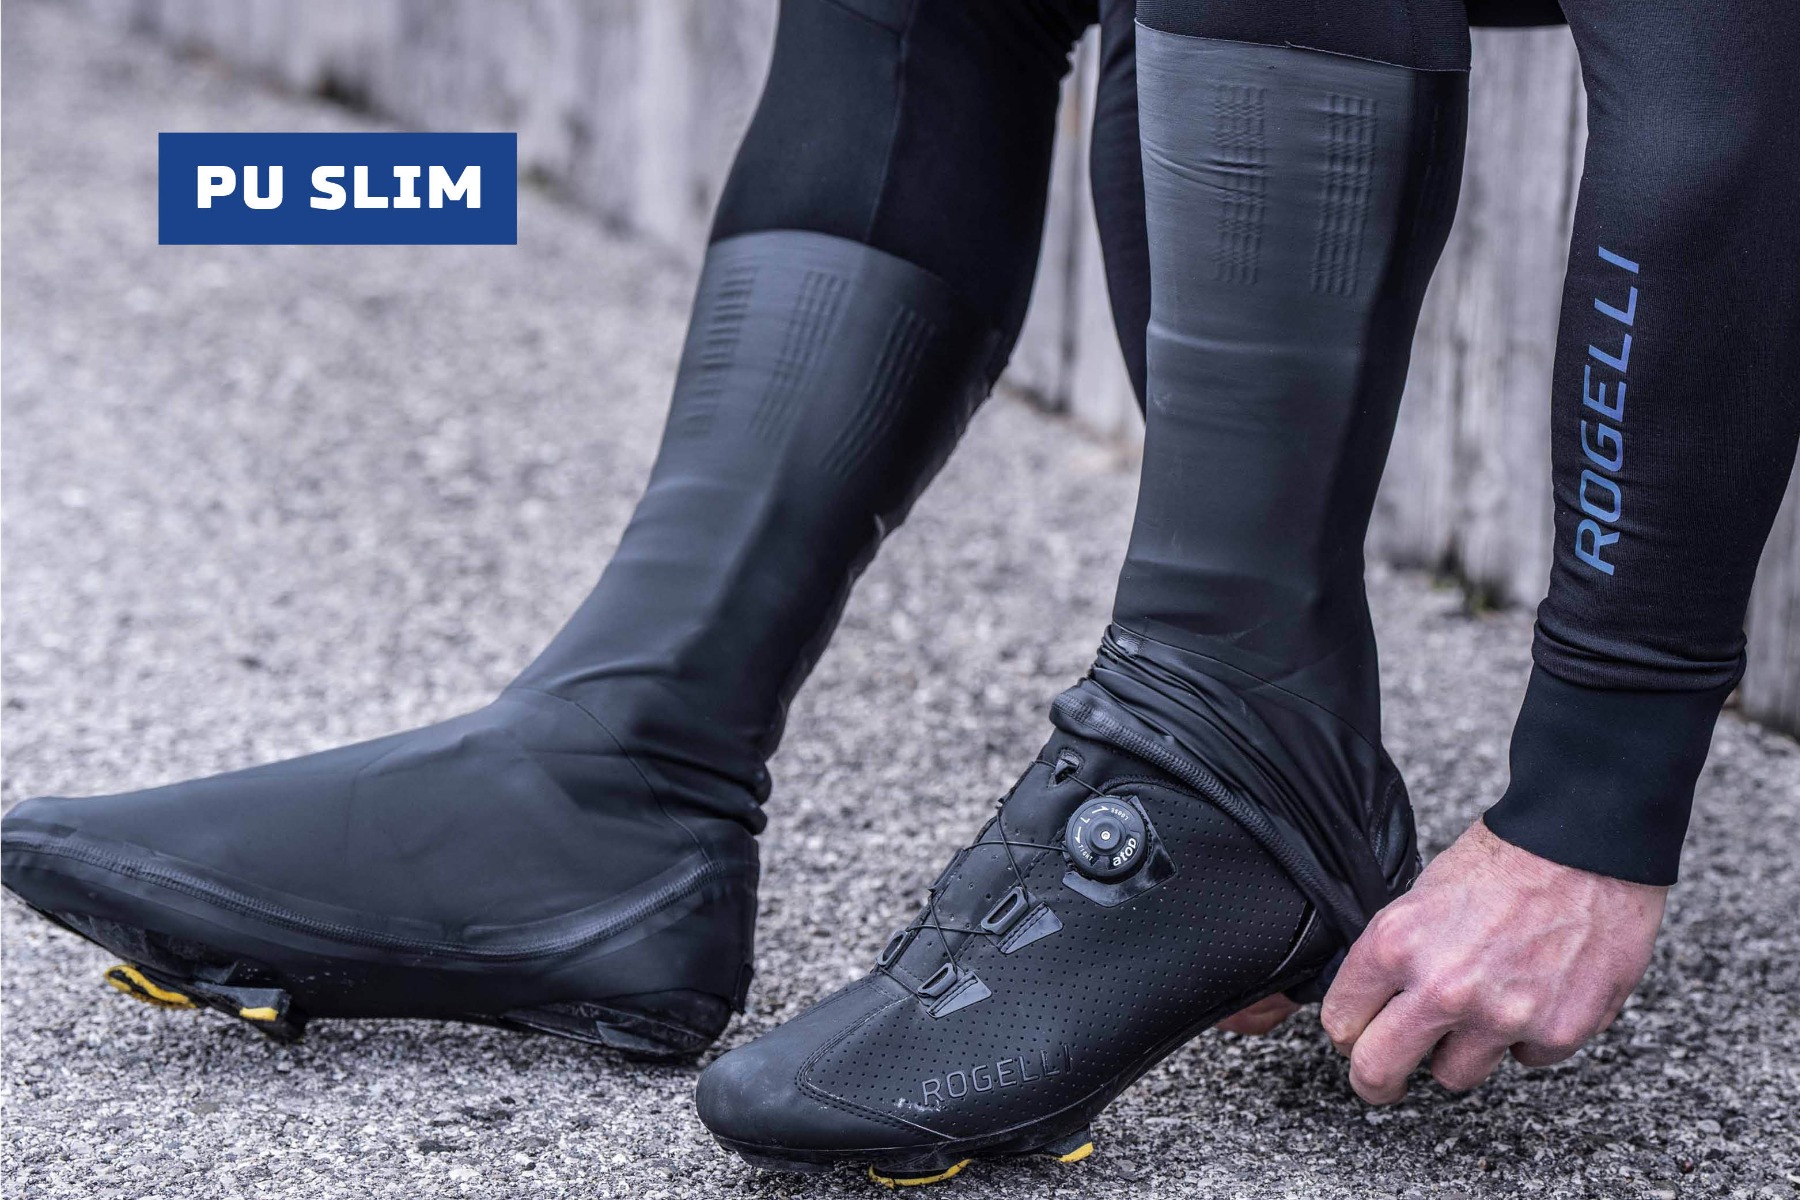 Aantrekken van PU Slim overschoenen van Rogelli voor bescherming tegen opspattend water, regen, wind en modder